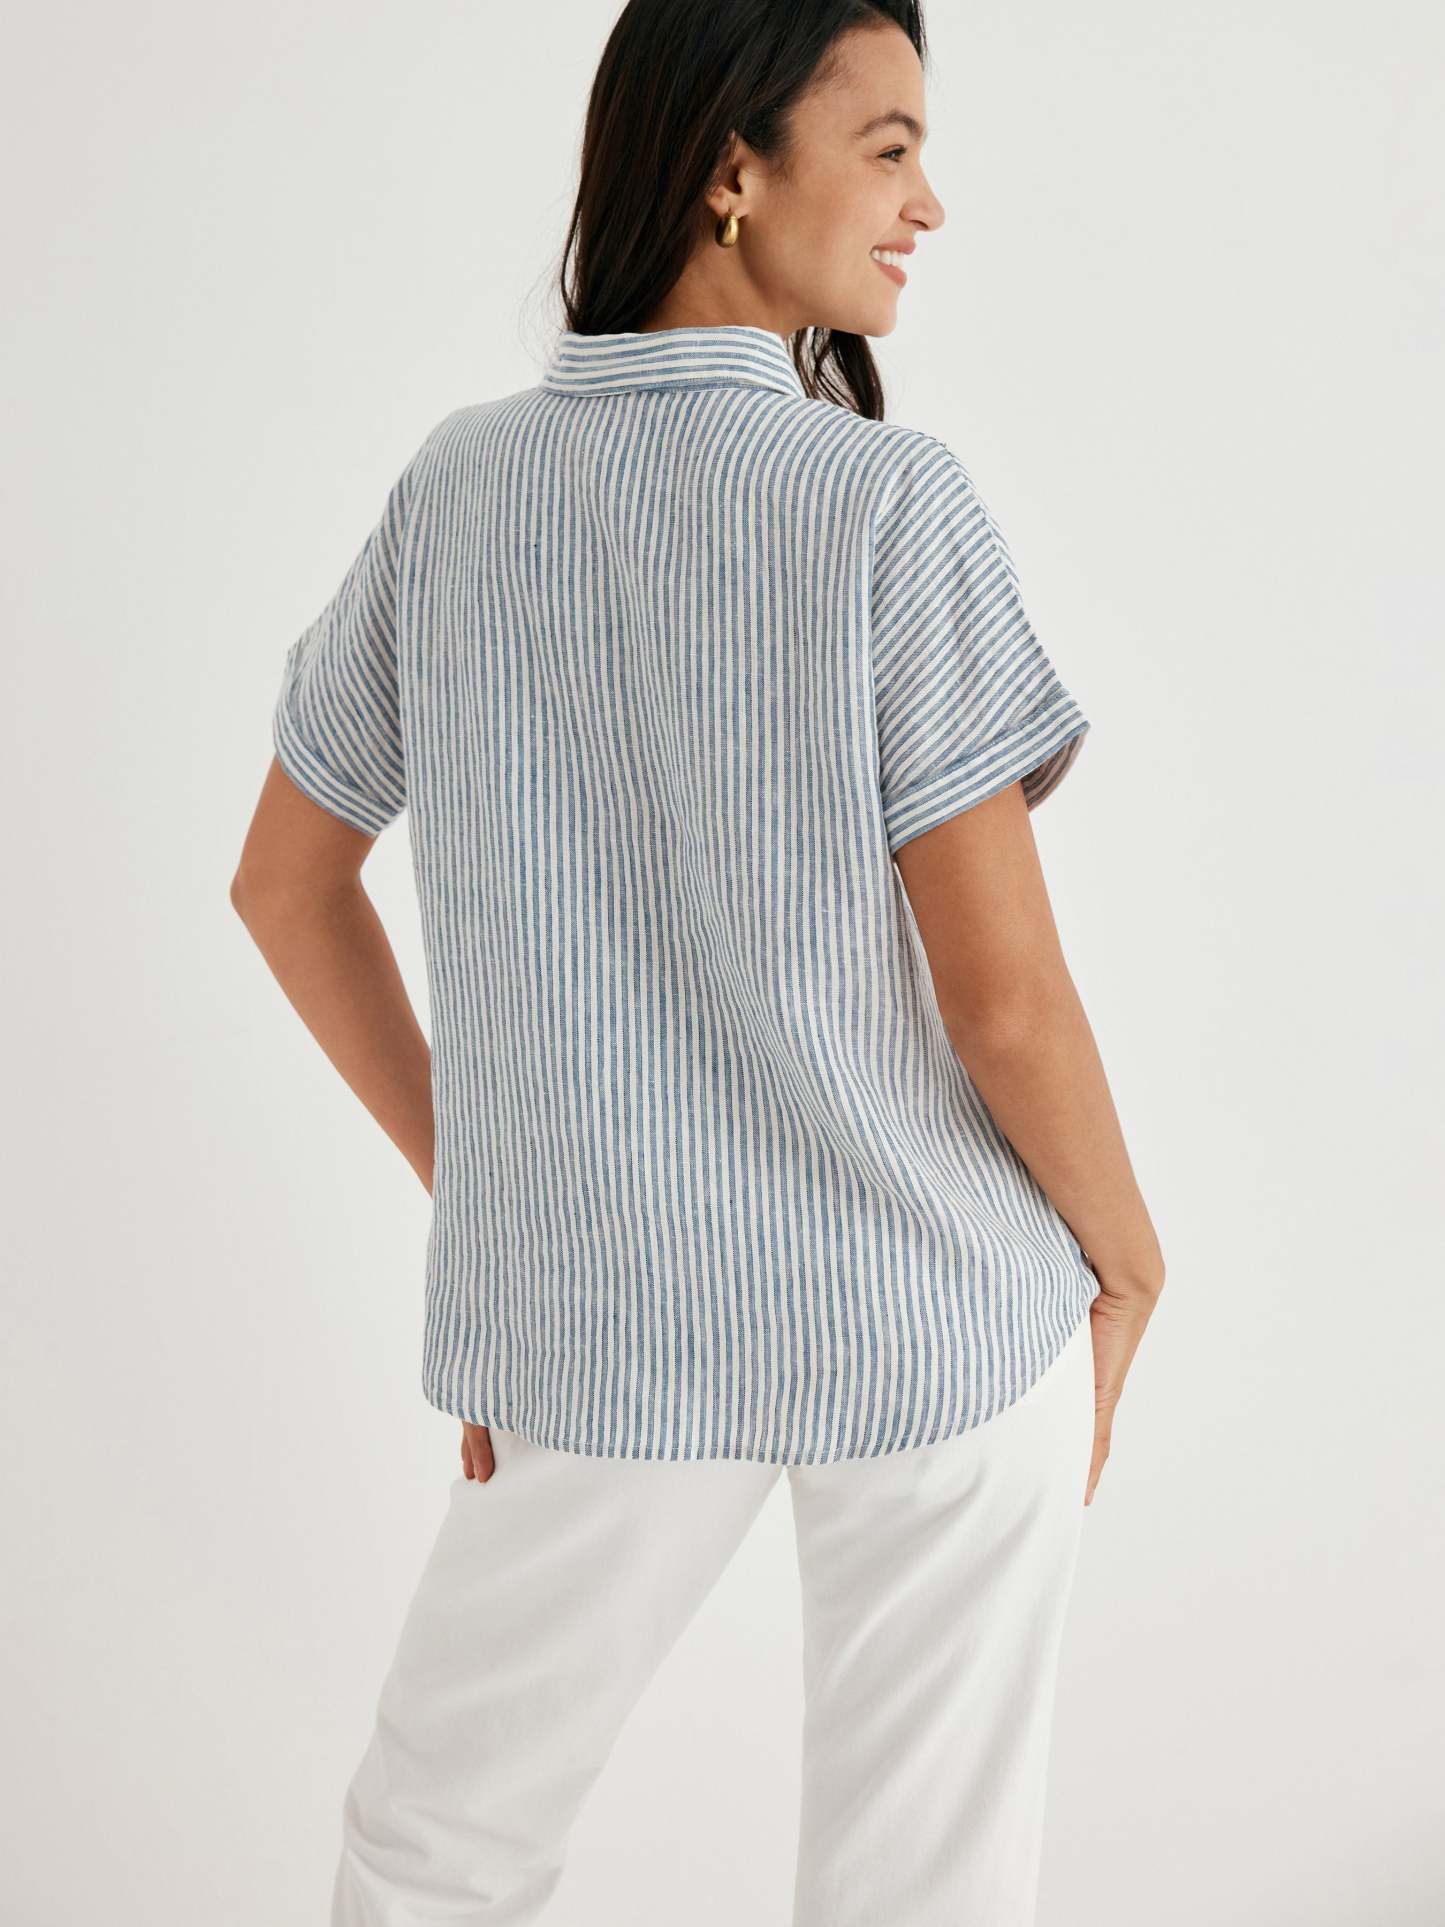 Cozinen 100% Linen Striped Classic Button-Front Shirt